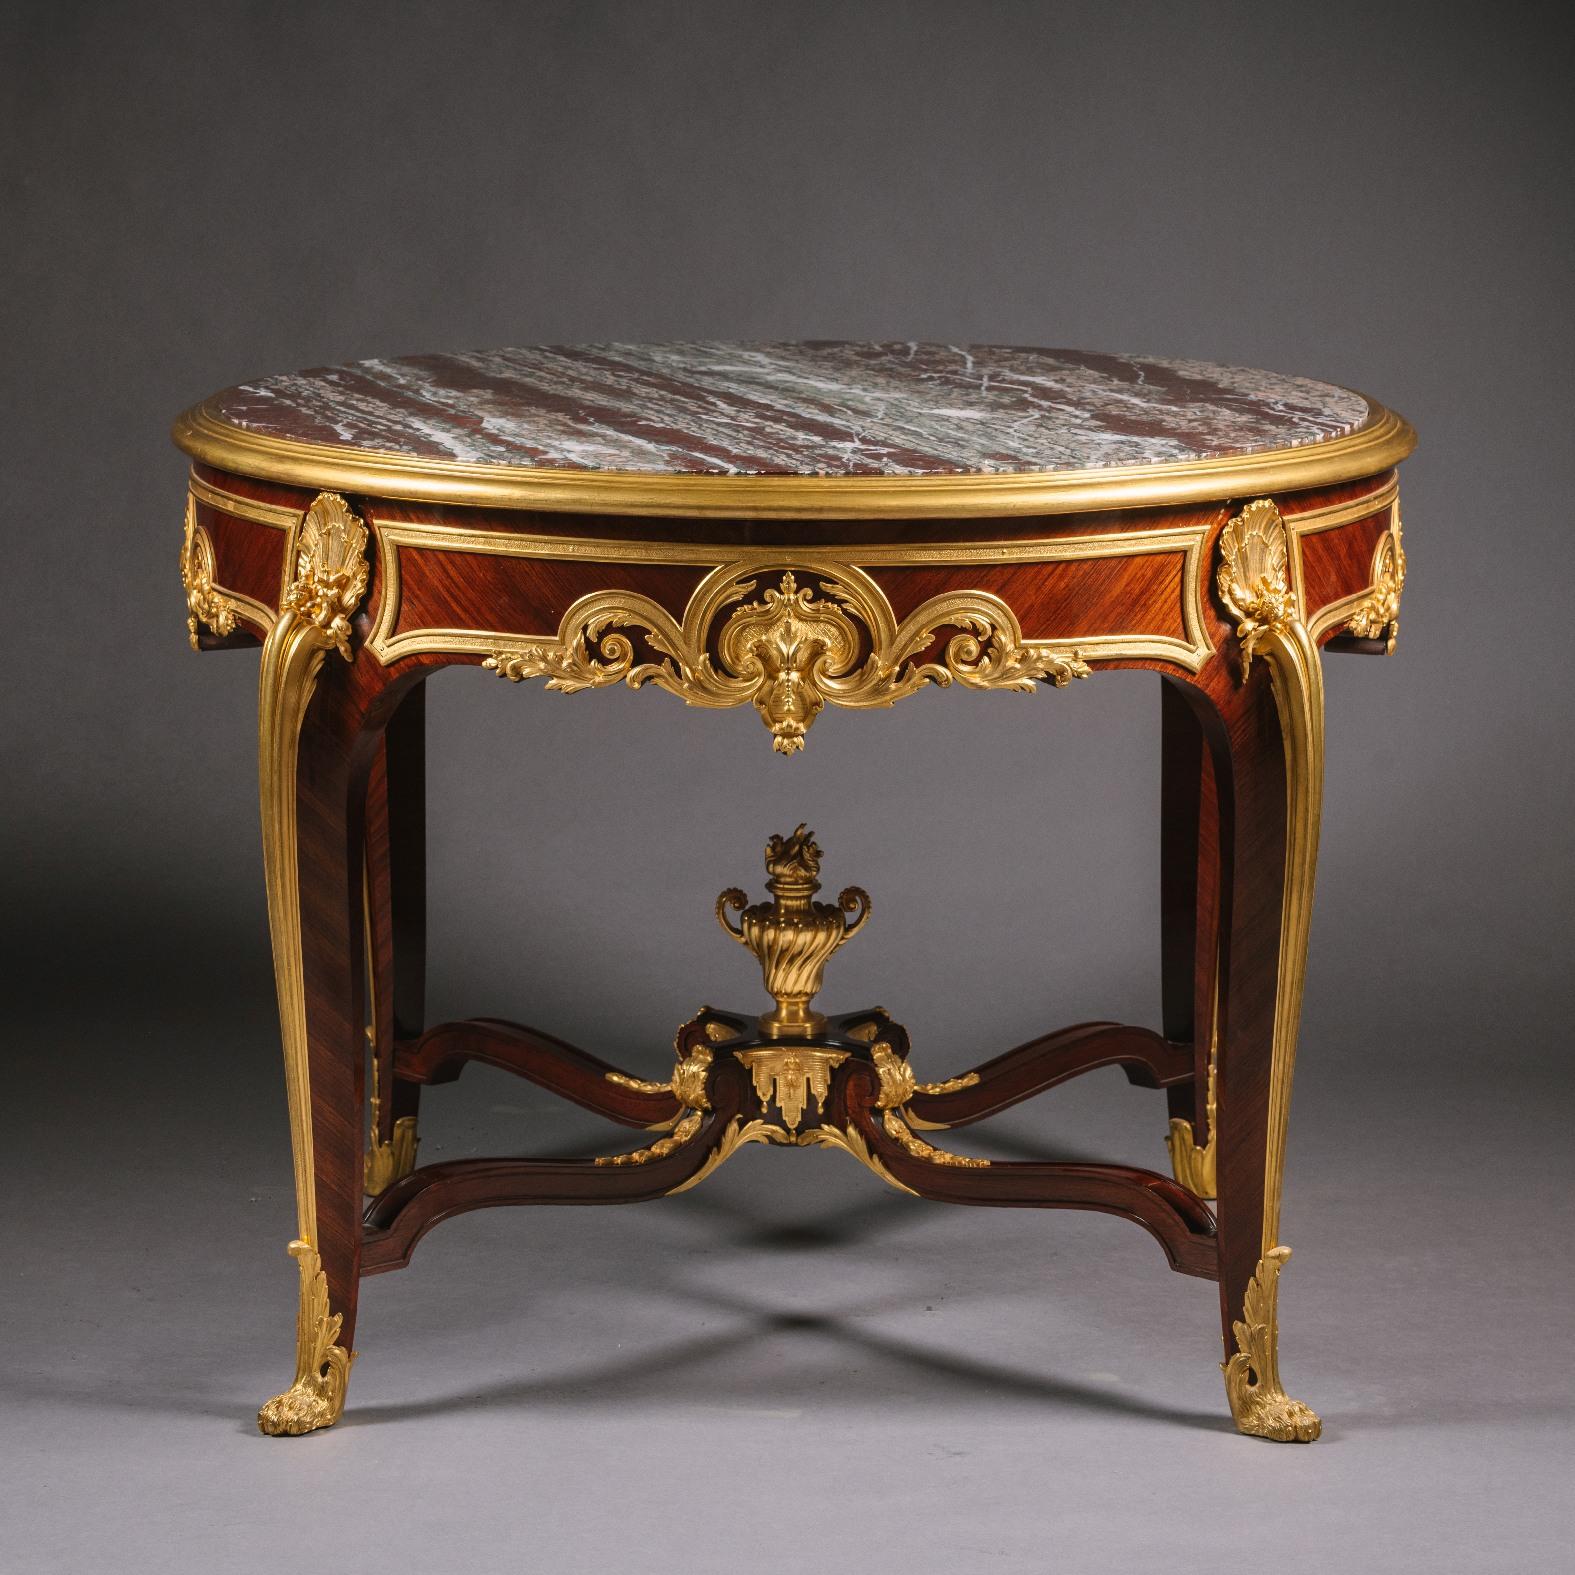 Ein wichtiger und seltener Tisch aus vergoldeter Bronze, Mahagoni und Bois Satiné, mit einer Platte aus Campan Rubané-Marmor. Von François Linke.

Linke-Indexnummer 1103. 
Die vergoldete Bronze auf dem Keilrahmen ist unterschiedlich eingeritzt und